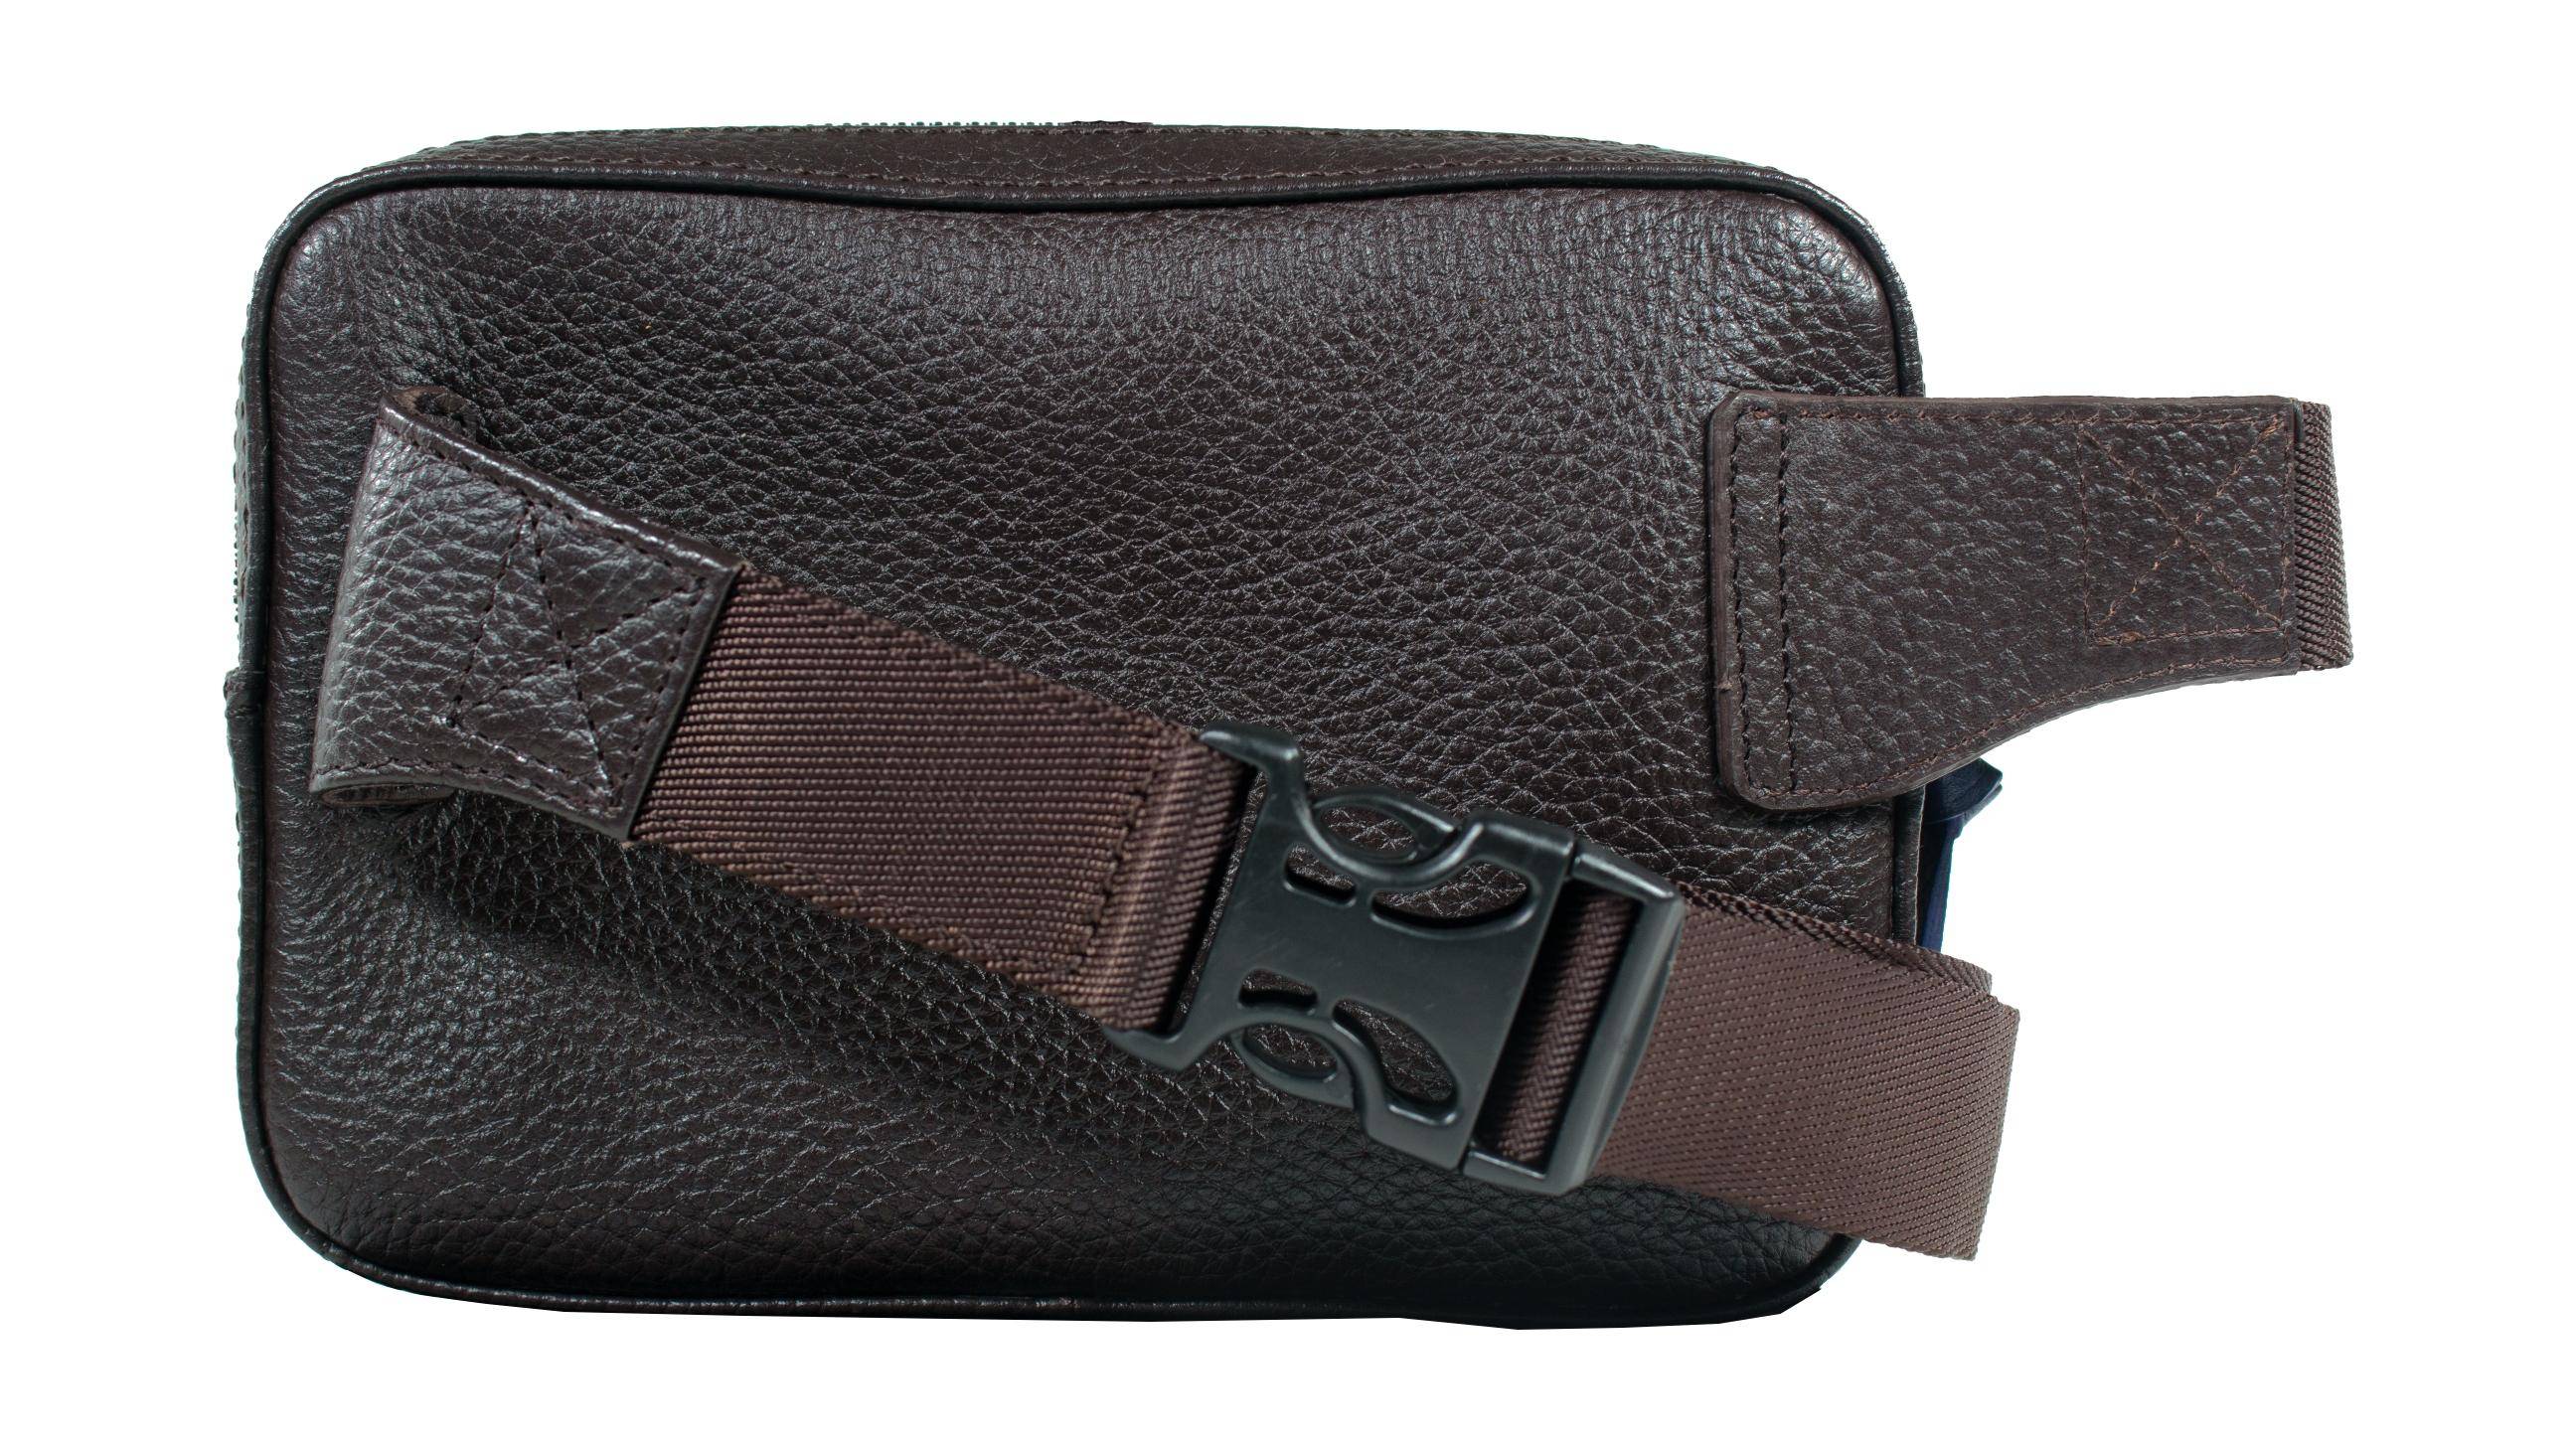 Мужская сумка на пояс Braun Buffel, коричневая, цвет коричневый, размер ONE SIZE - фото 2